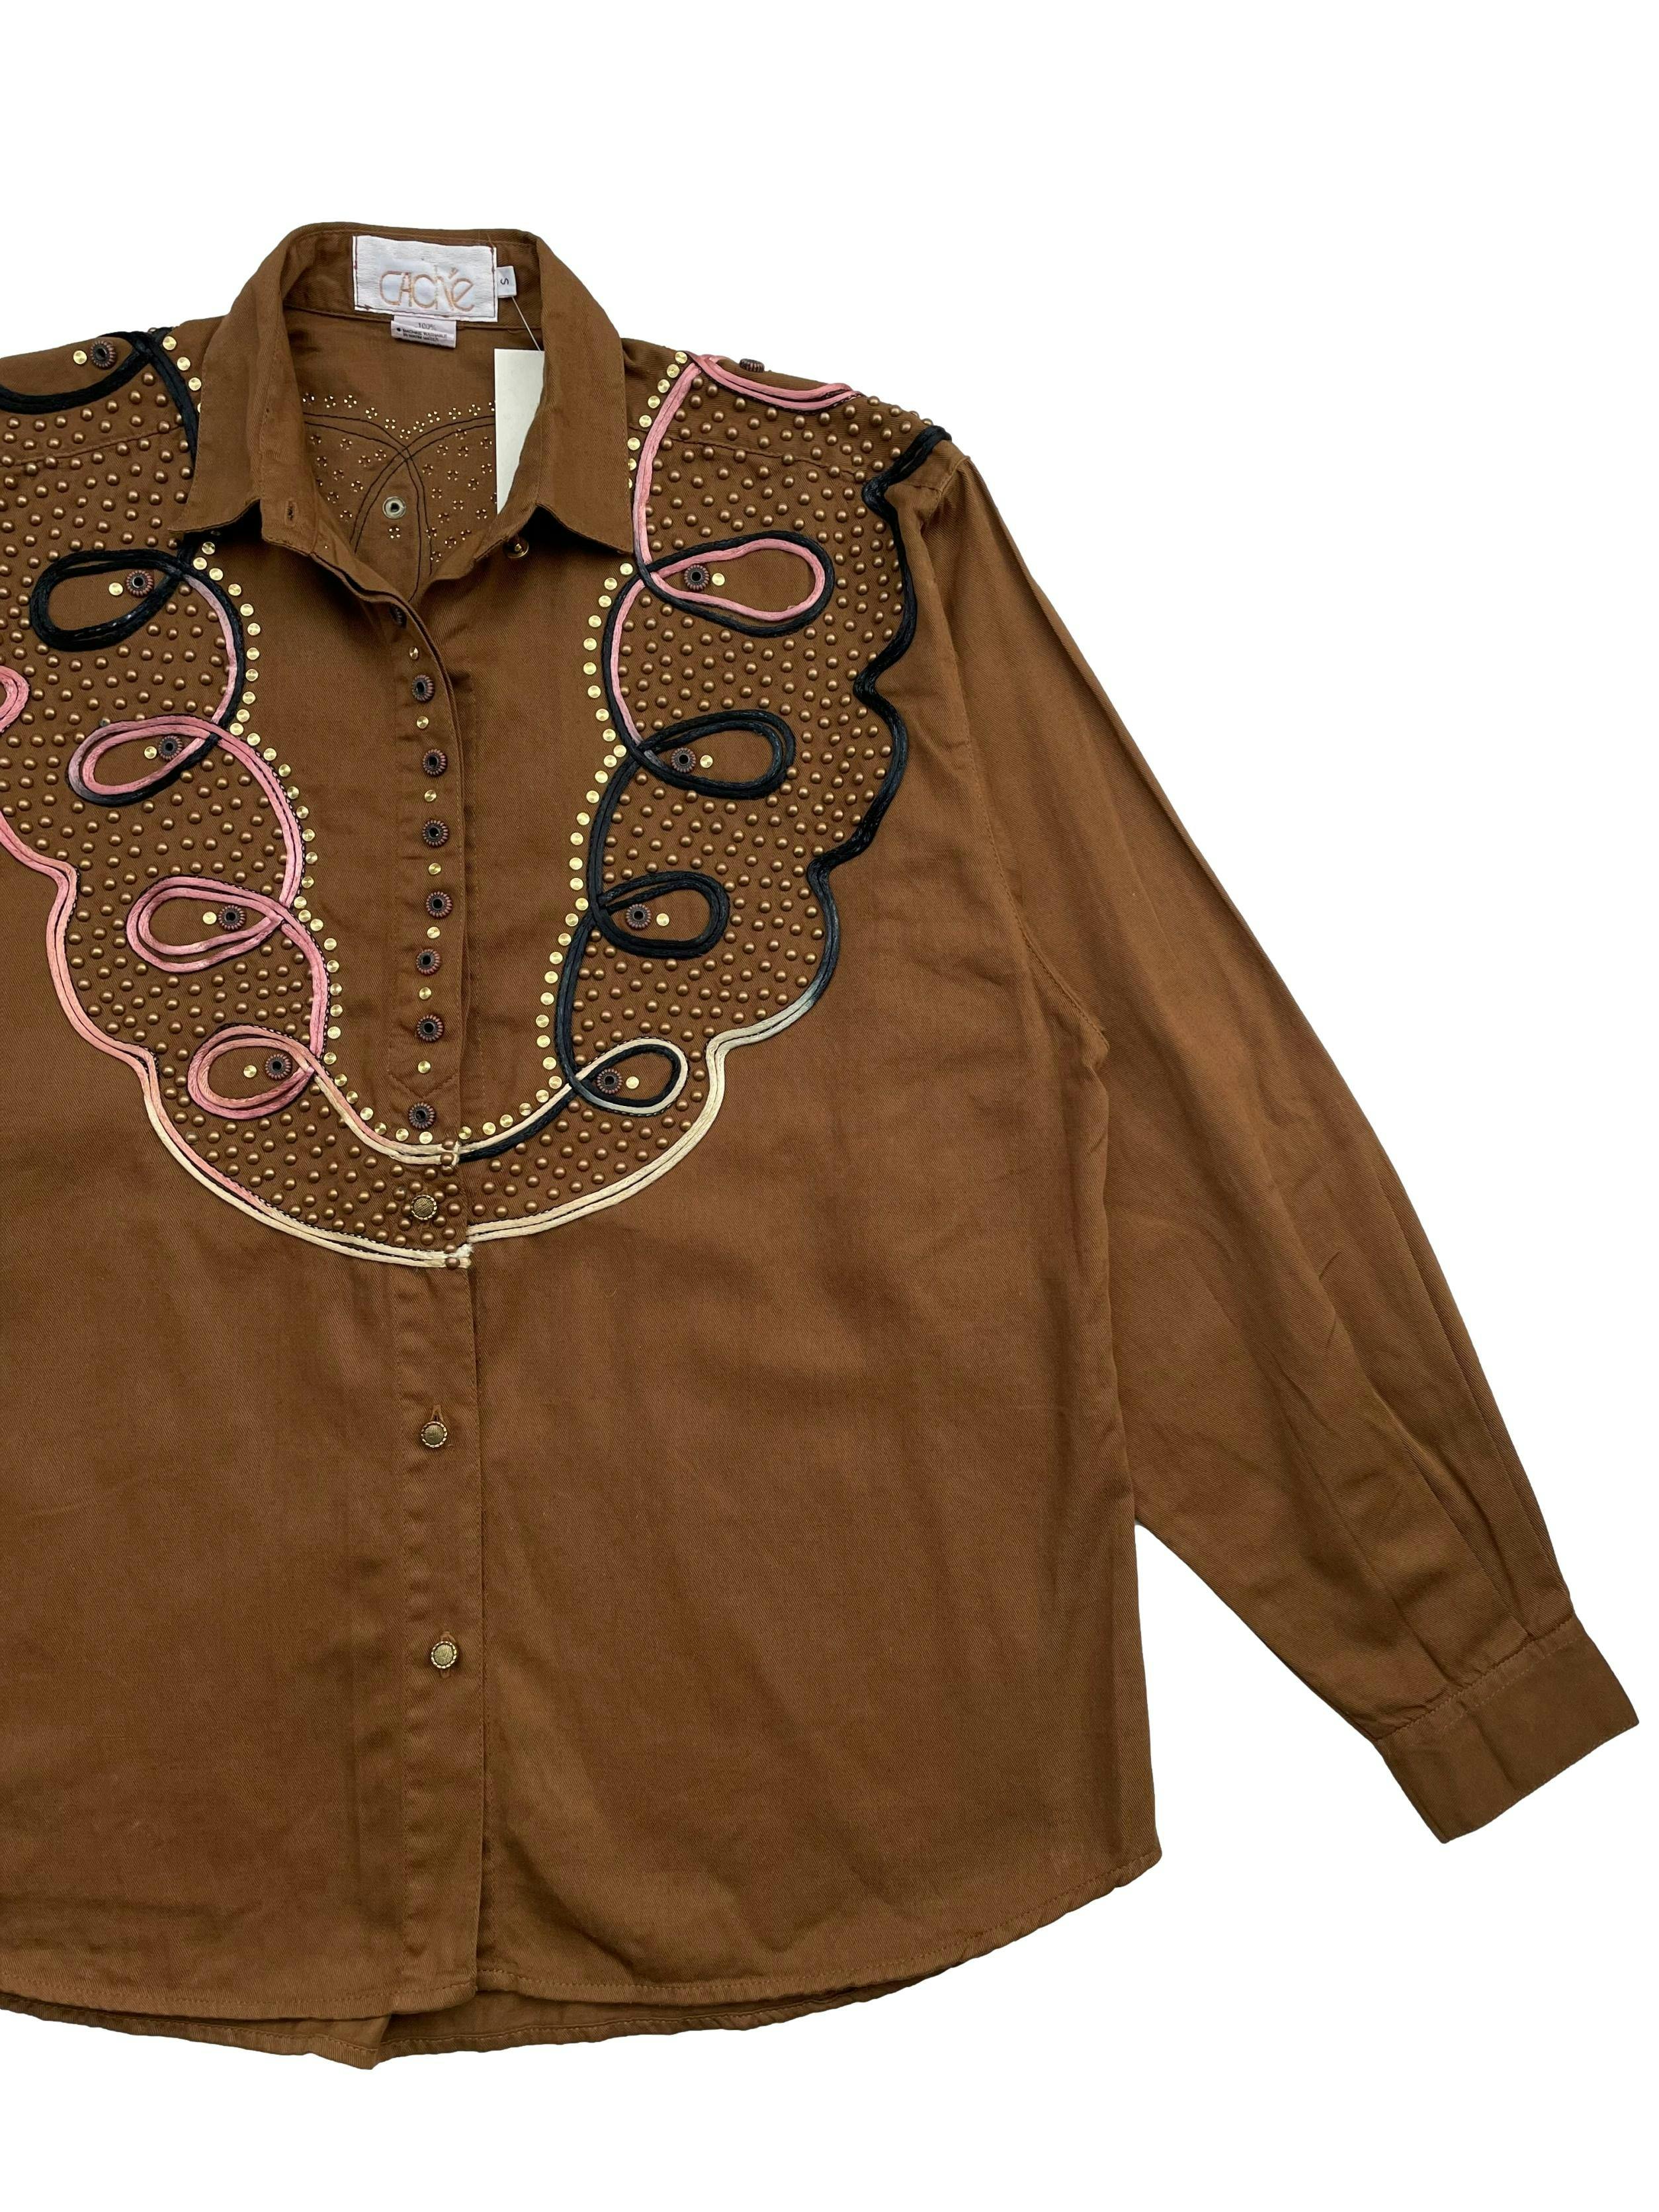 Blusa vintage Caché marrón,100% algodón. Con tachas y aplicaciones en negro, dorado y rosado. Hombros 45cm, Largo 63cm.Talla S en en etiqueta.